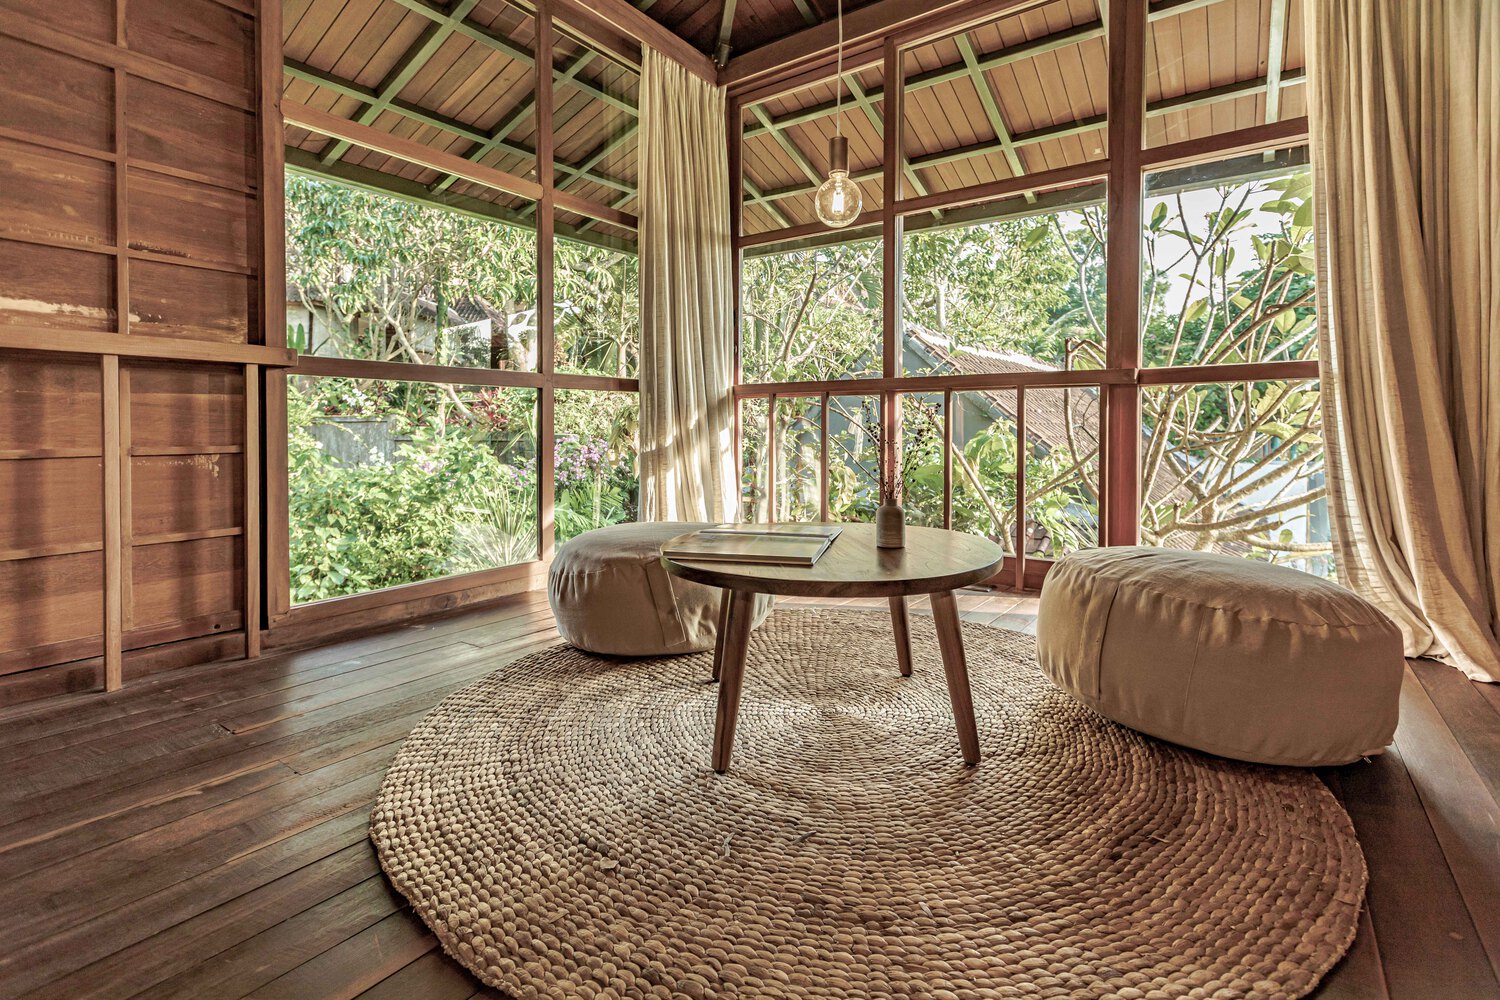 Ngôi nhà gỗ hình cái cây độc đáo ở Bali, nằm lọt thỏm giữa khu vườn nhiệt đới đầy bình yên - Ảnh 3.